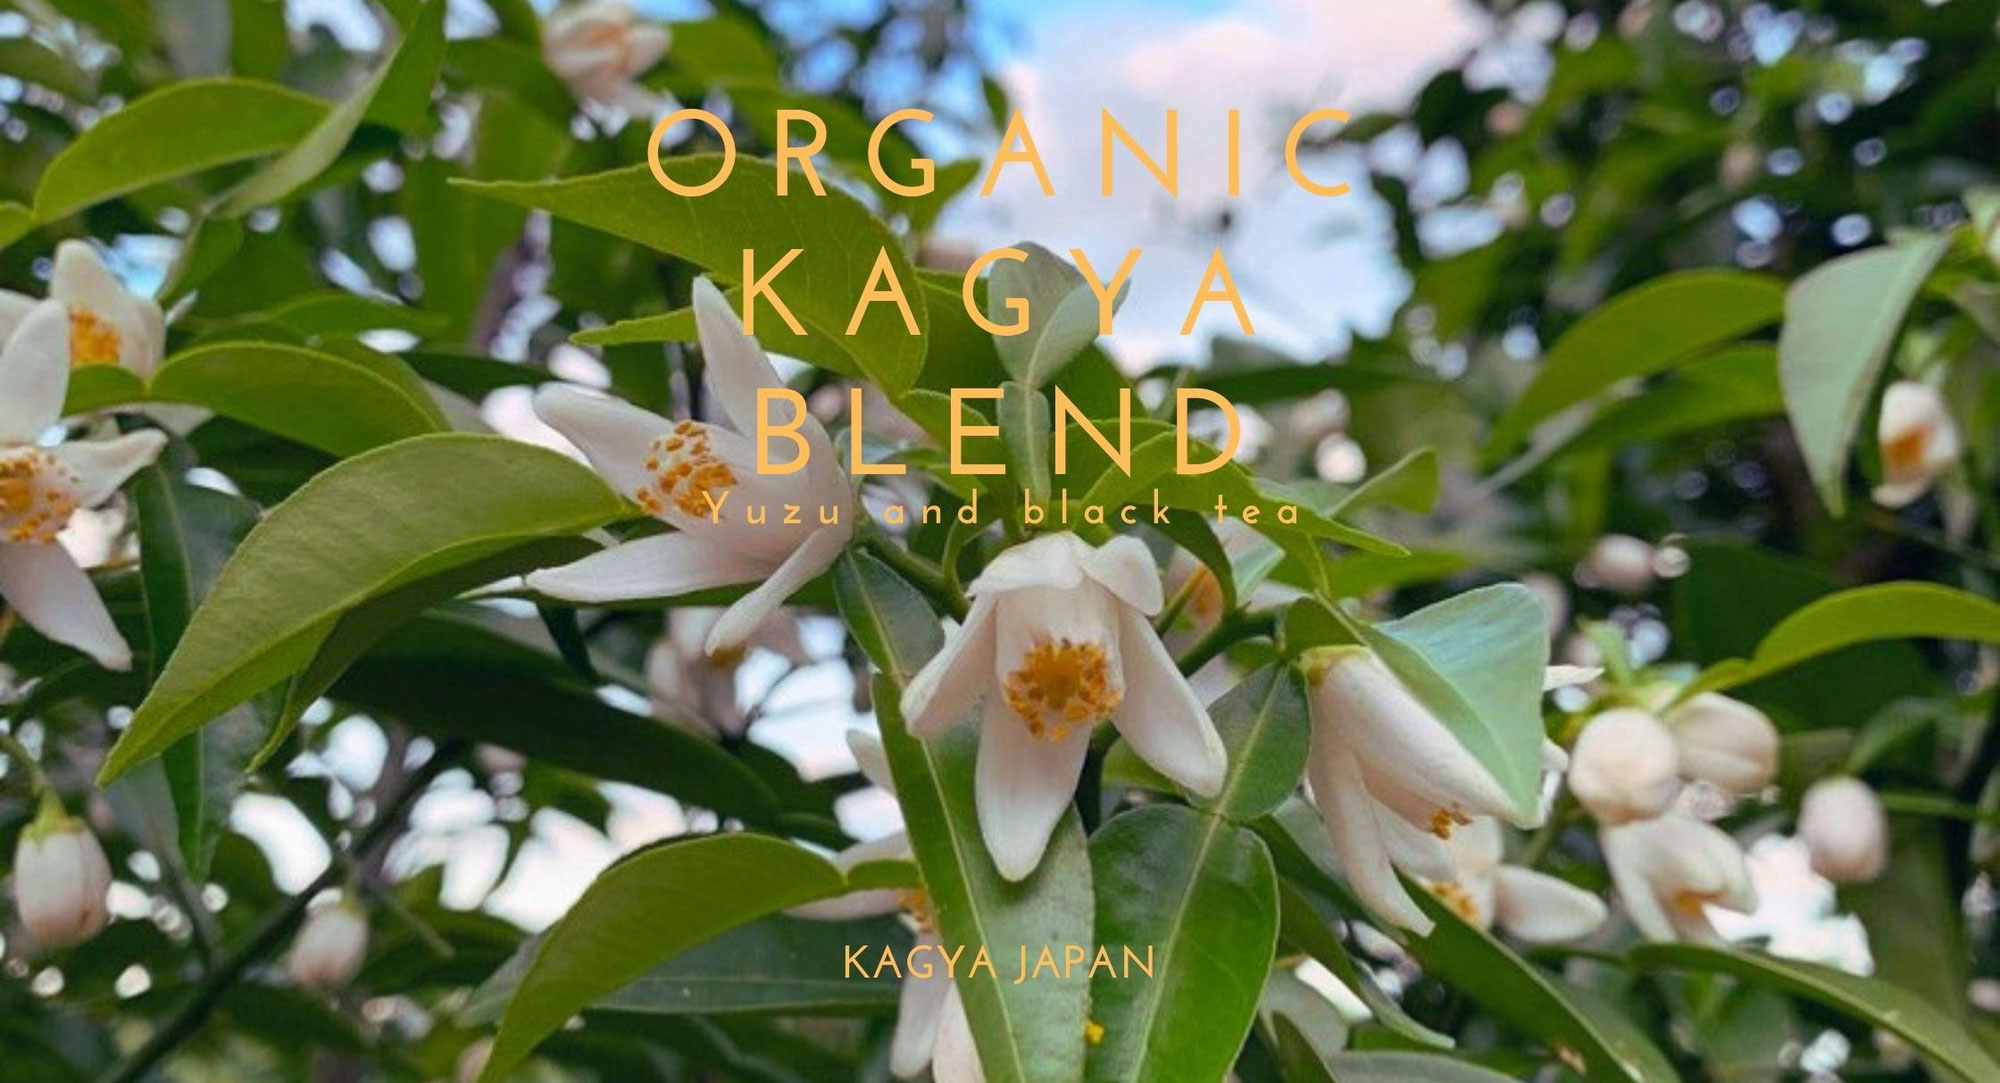 柚子のエッセンシャルオイルブランド『KAGYA JAPAN』から有機柚子と有機紅茶のブレンドティー『オーガニック・カグヤブレンド』を発売